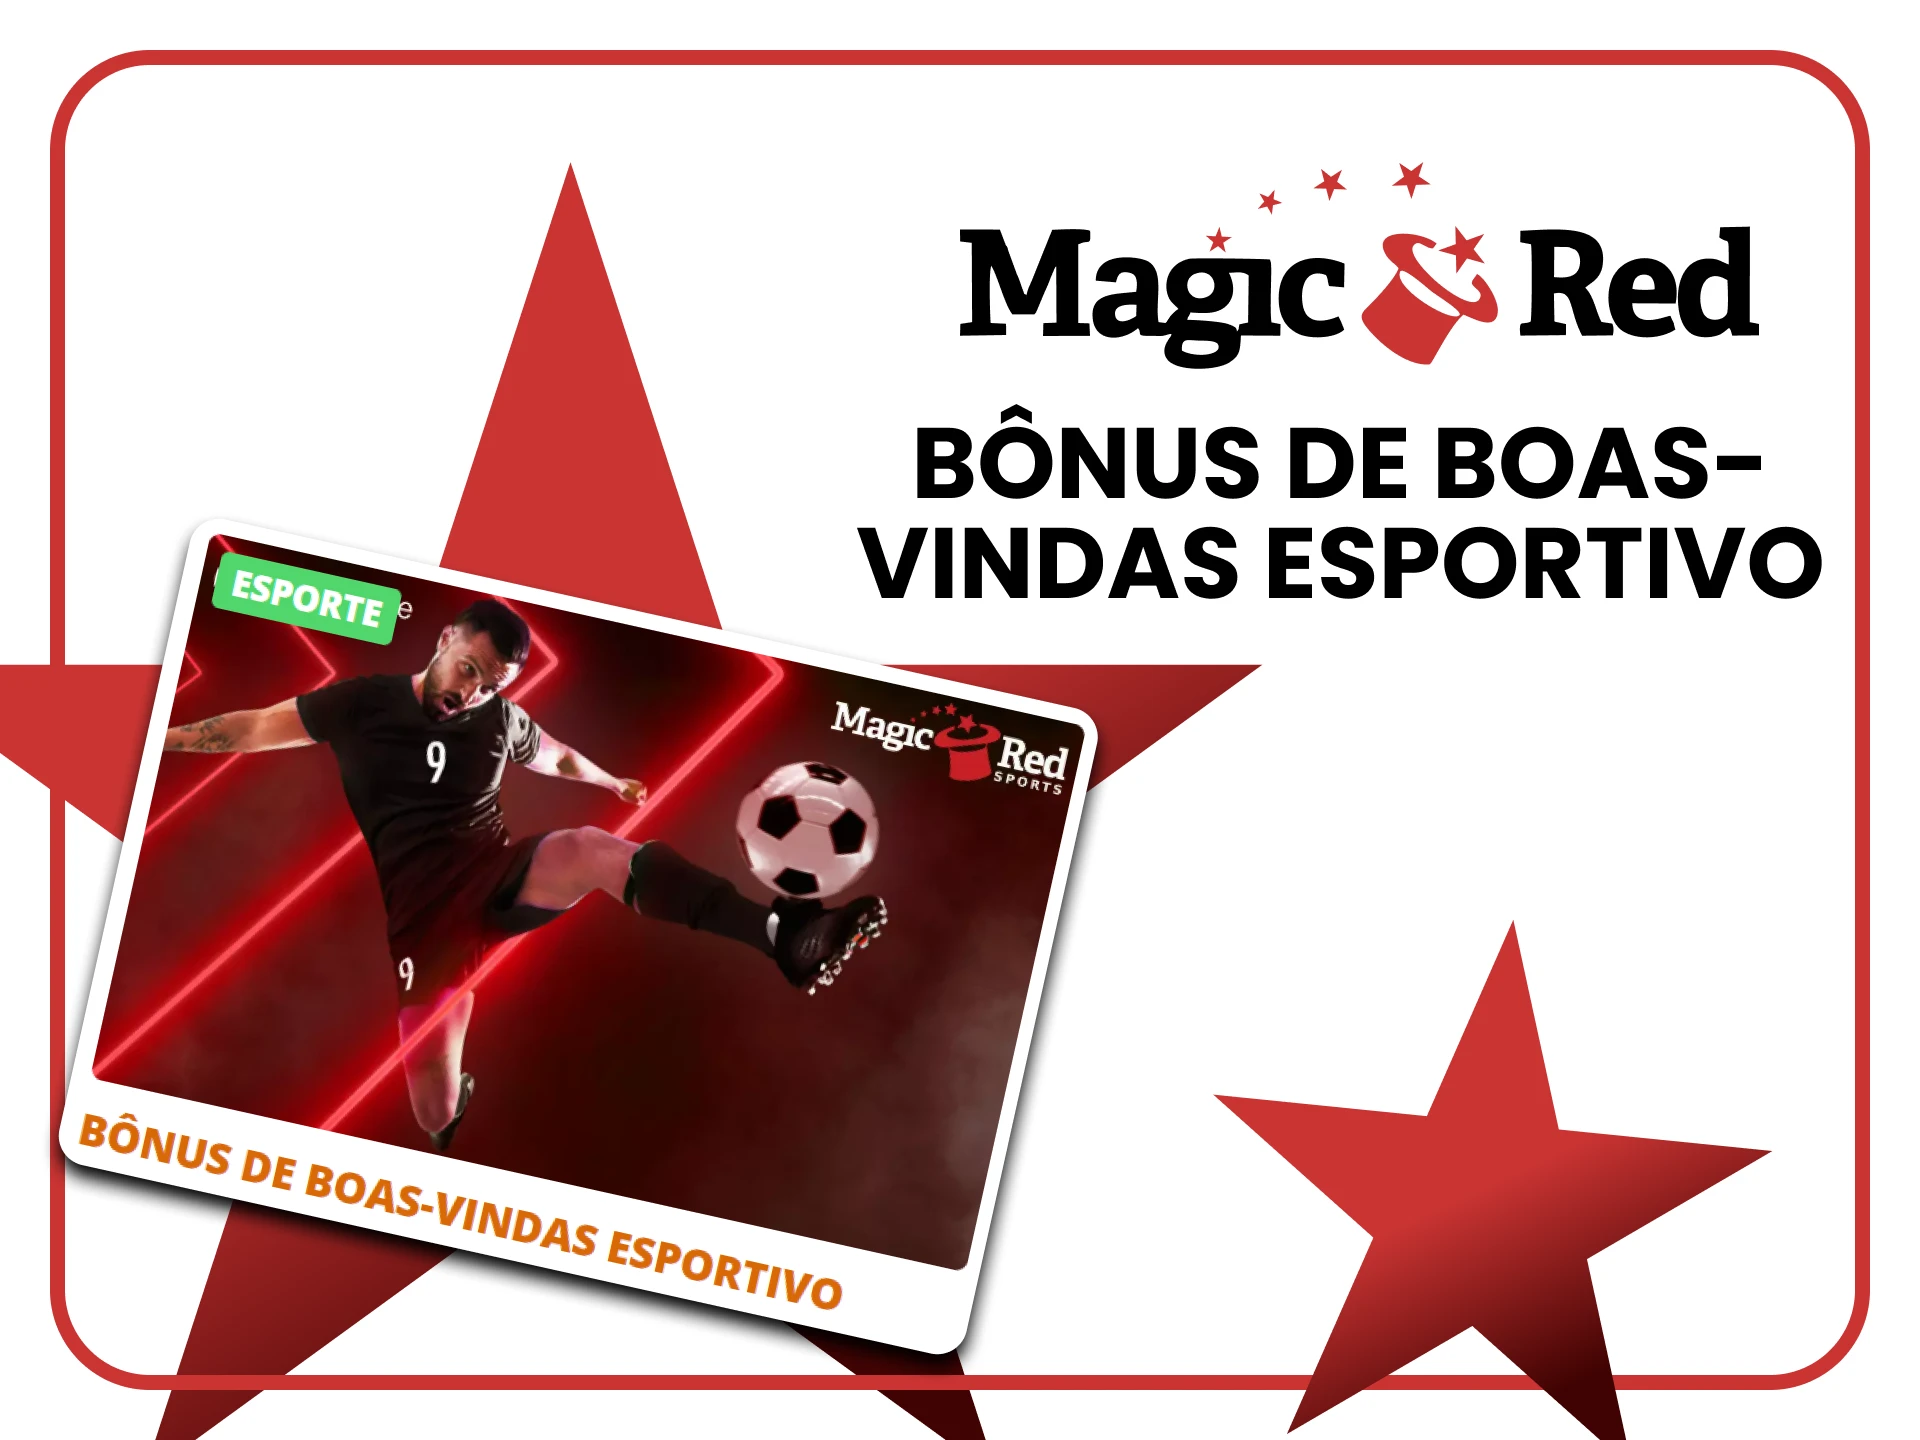 Magic Red oferece um bônus de boas-vindas para apostas esportivas.